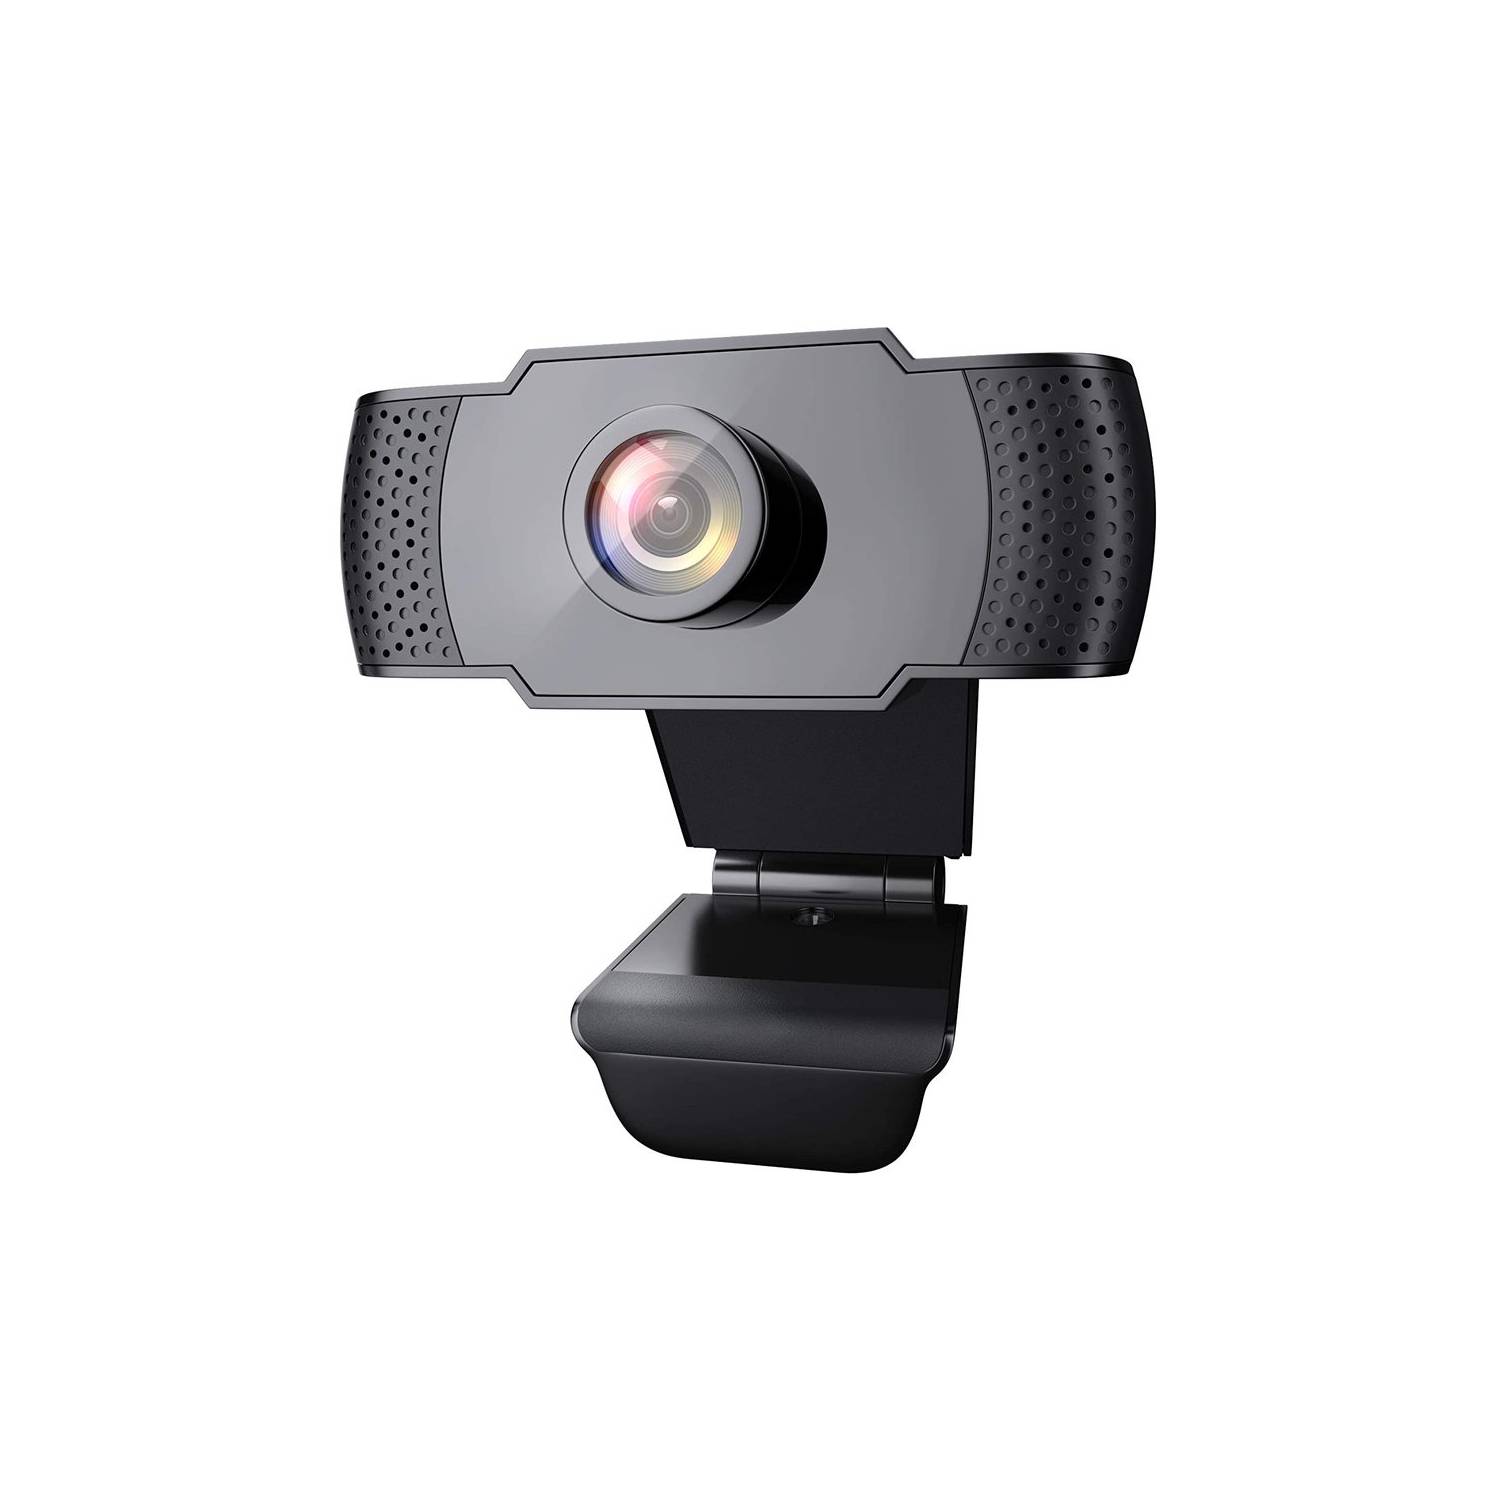 Cabecear mínimo Convertir Camara web webcam con micrófono para computadora y portátil GENERICO |  falabella.com